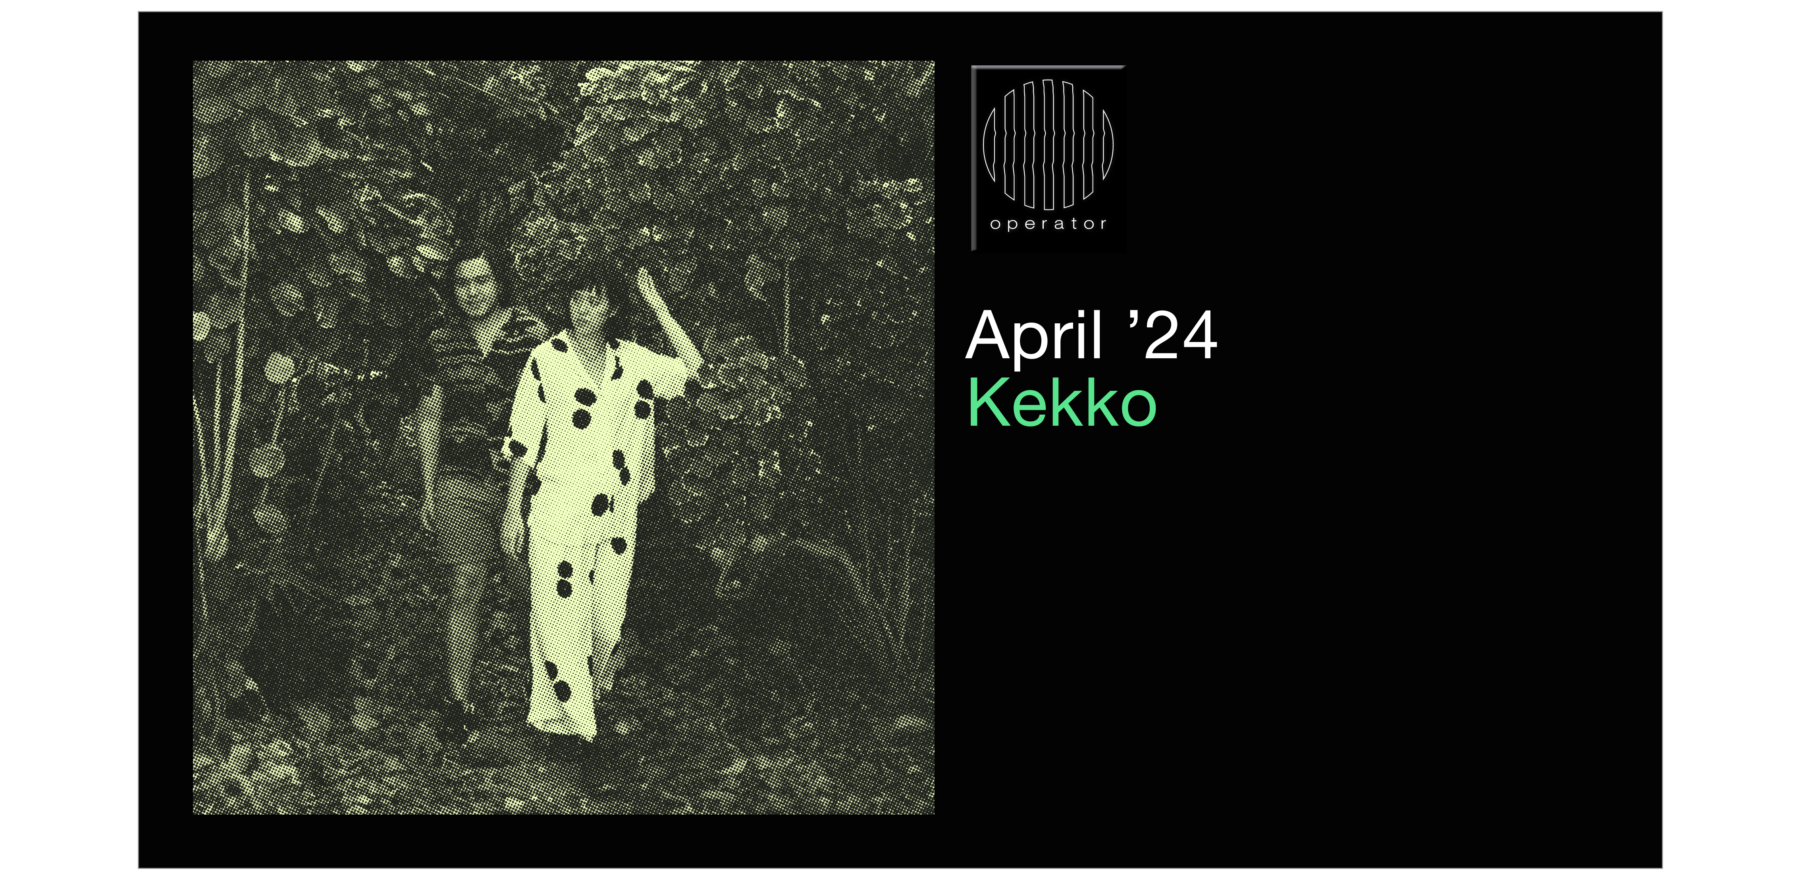 Playlist April '24 - Operator invites Kekko